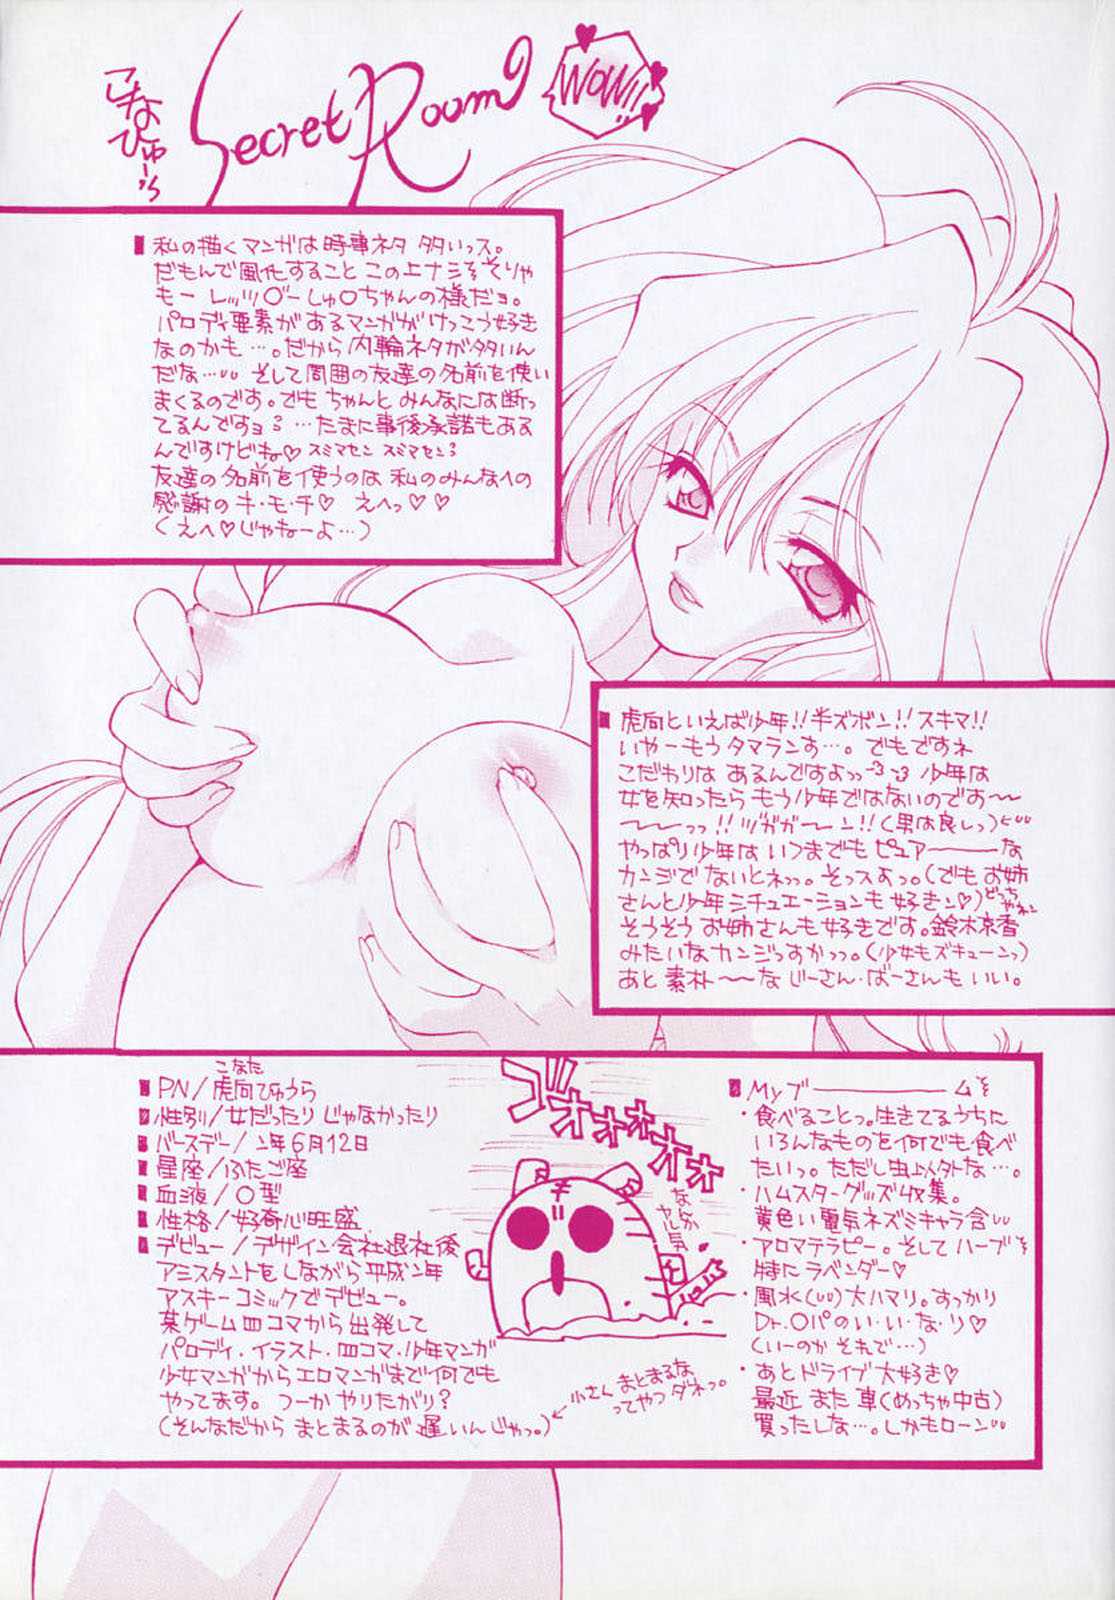 [Konata Hyuura] Pink Hoppeta [虎向ひゅうら] ピンクほっぺた